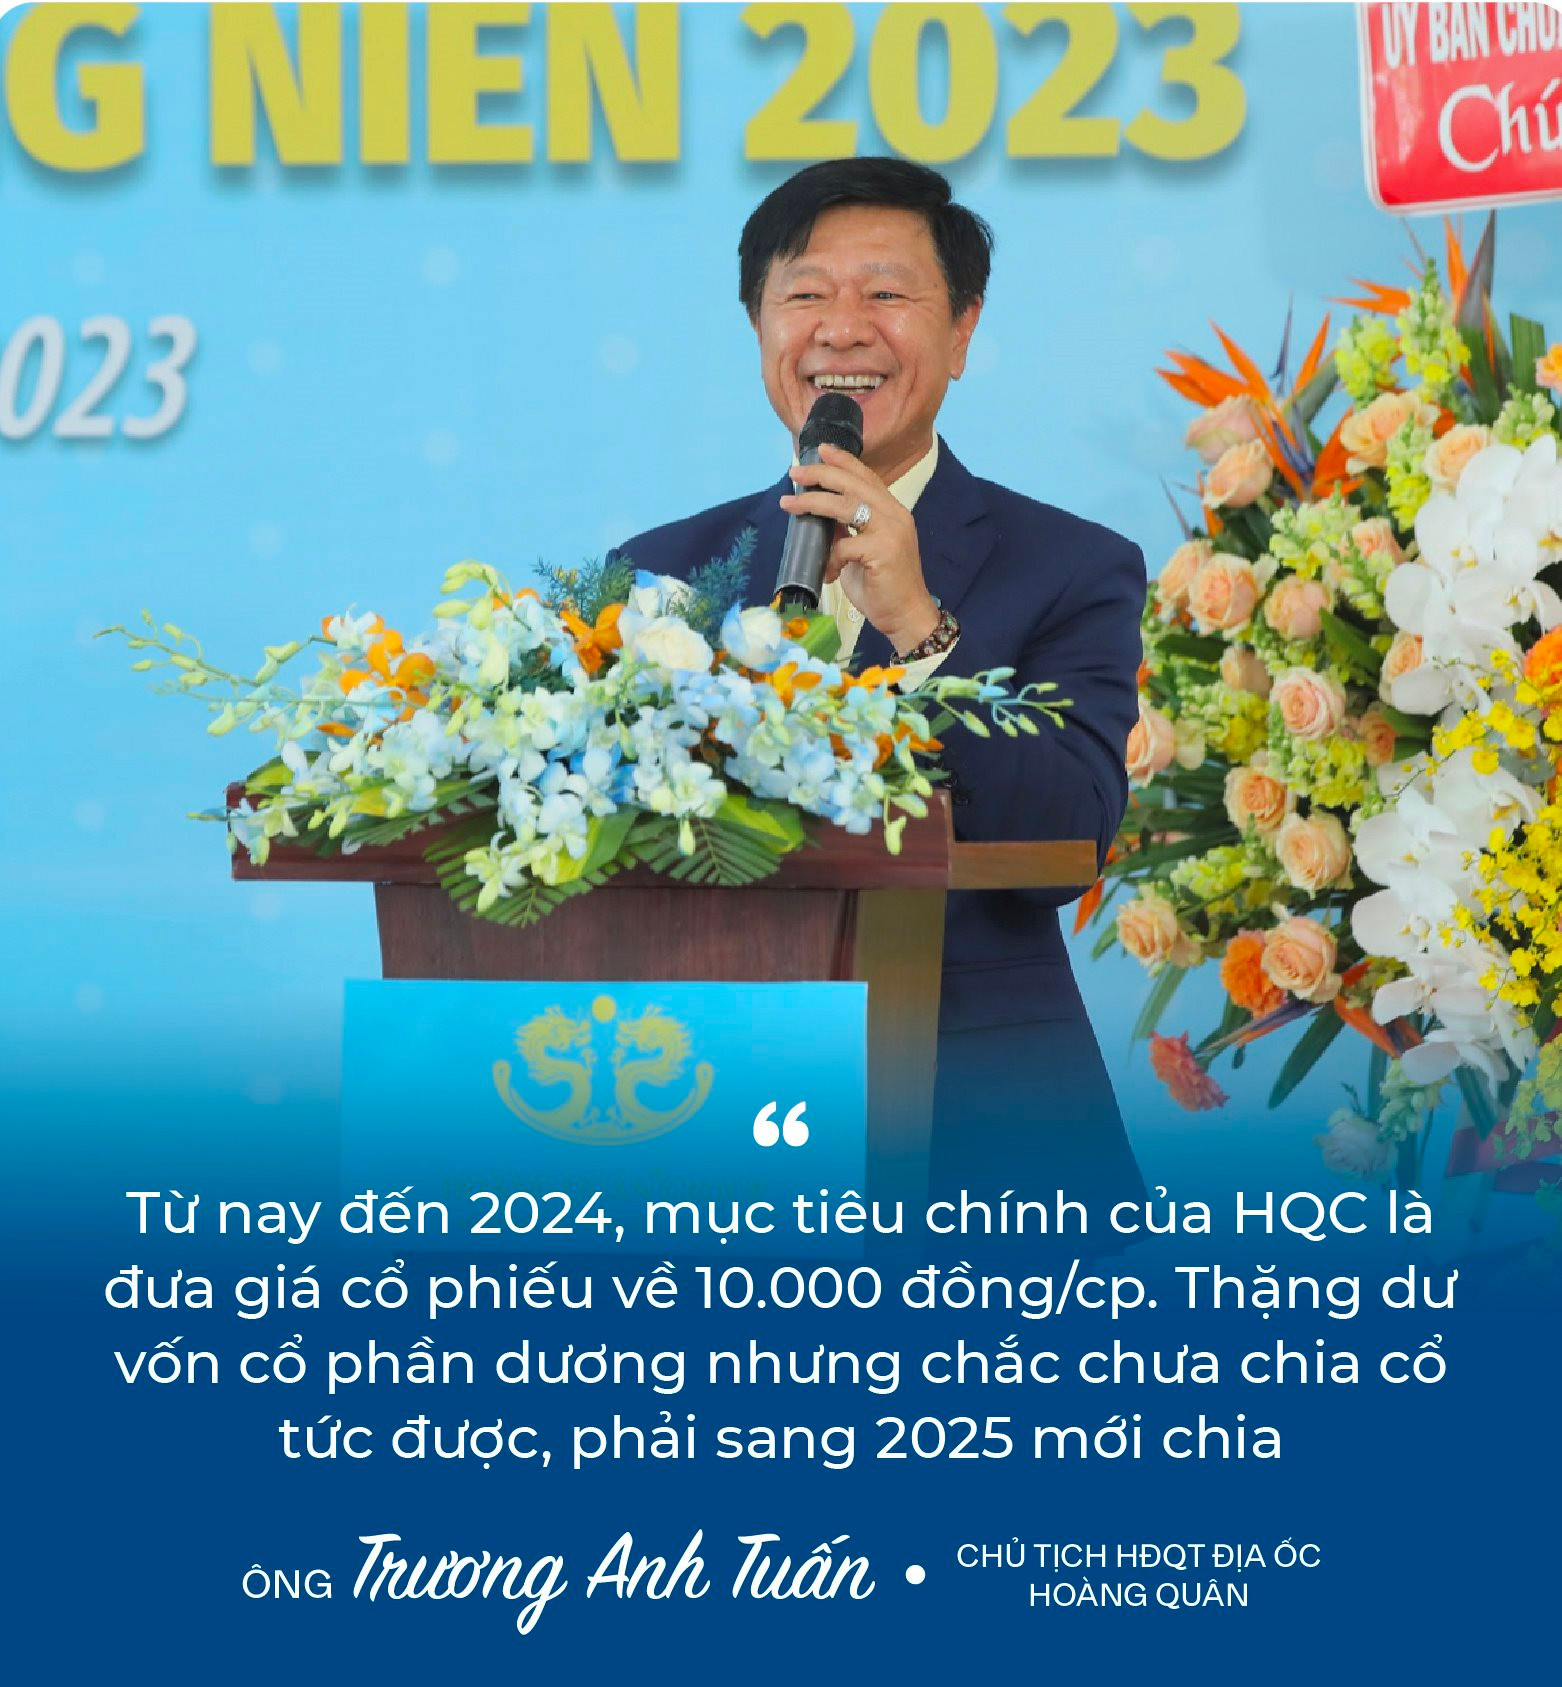 Chủ tịch Trương Anh Tuấn: ﻿“8 năm rồi Hoàng Quân (HQC) không đạt kế hoạch, và tôi cũng nói thật năm nay chưa chắc đạt” - Ảnh 3.